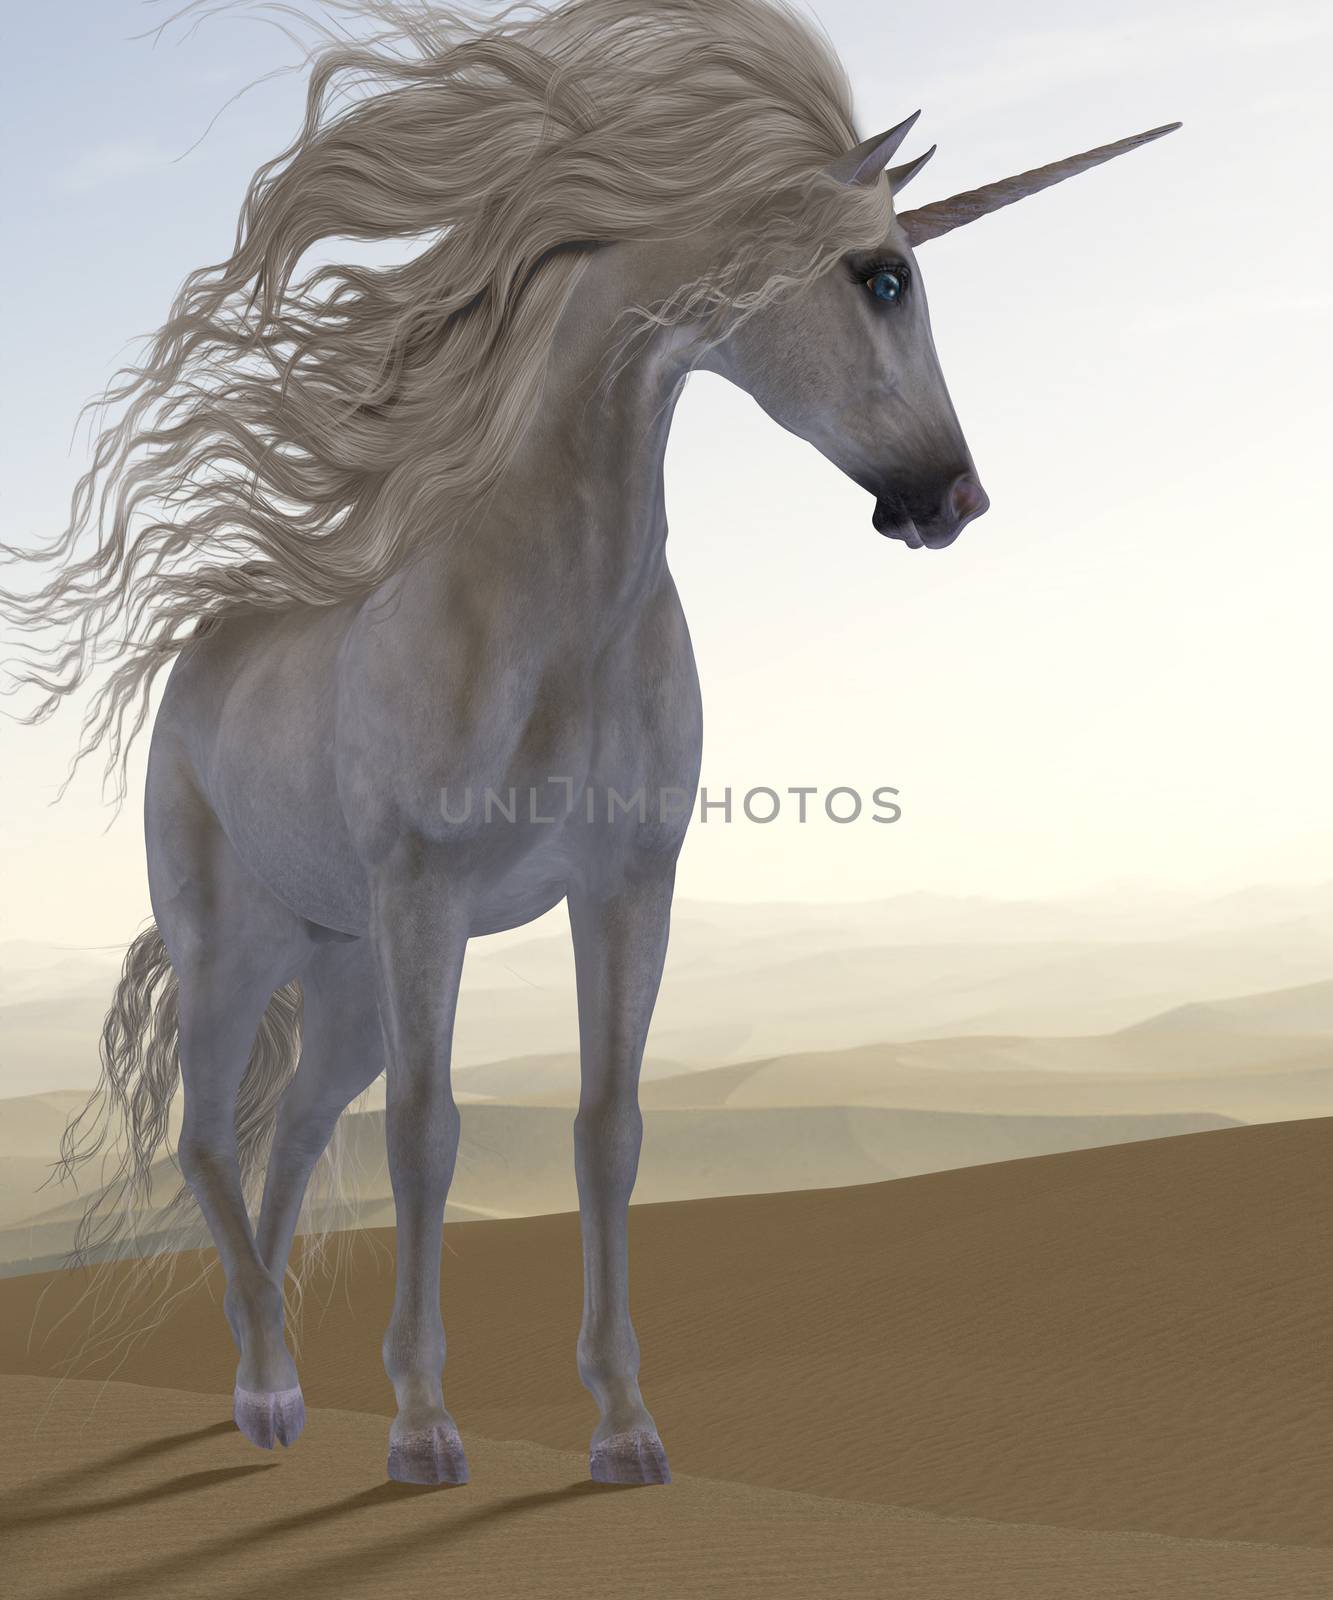 Desert Dune Unicorn by Catmando